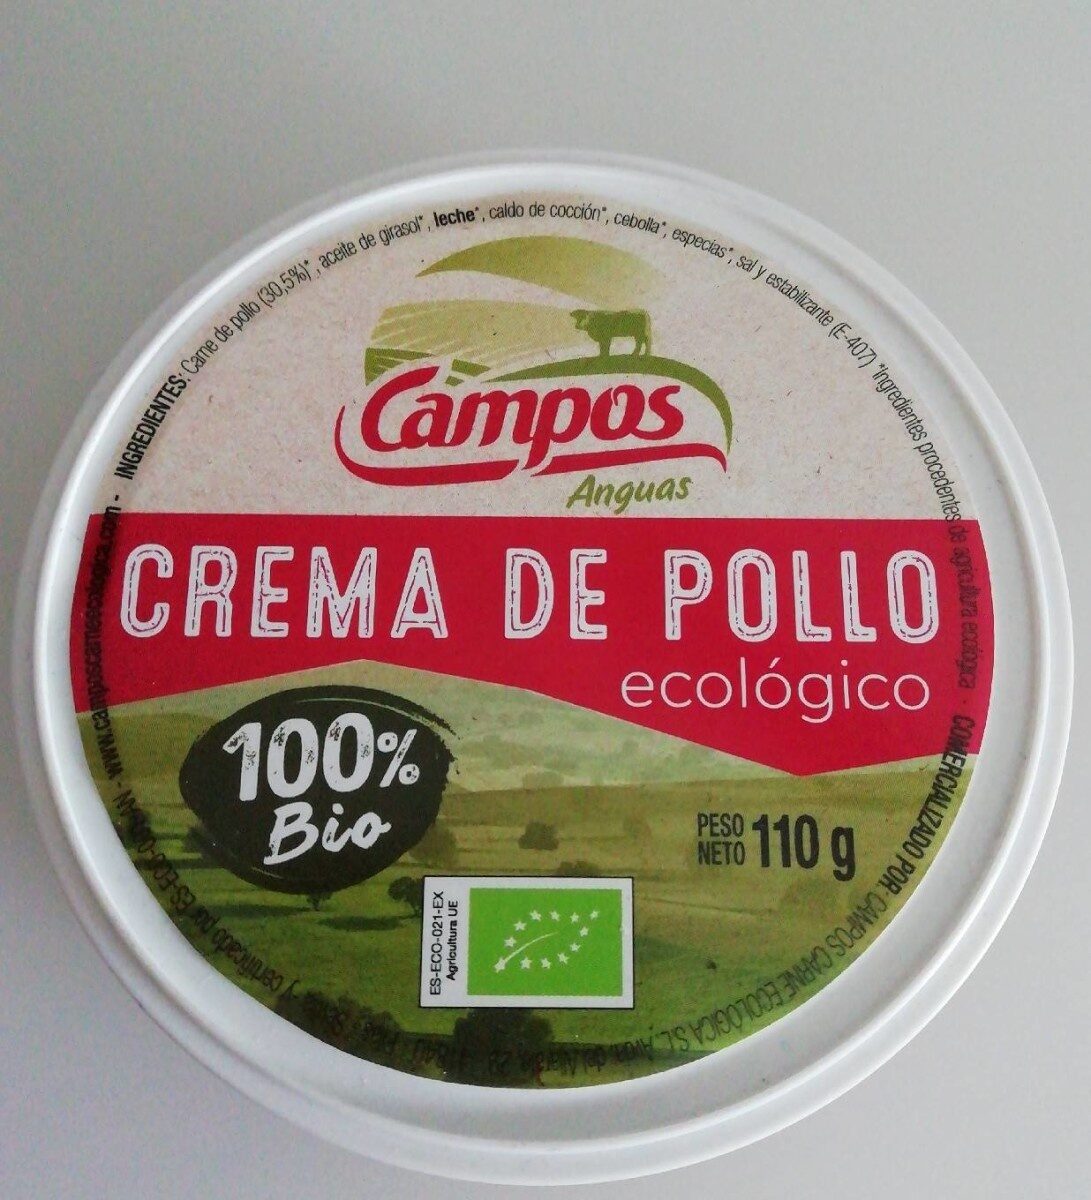 Crema de pollo ecológico - Product - es